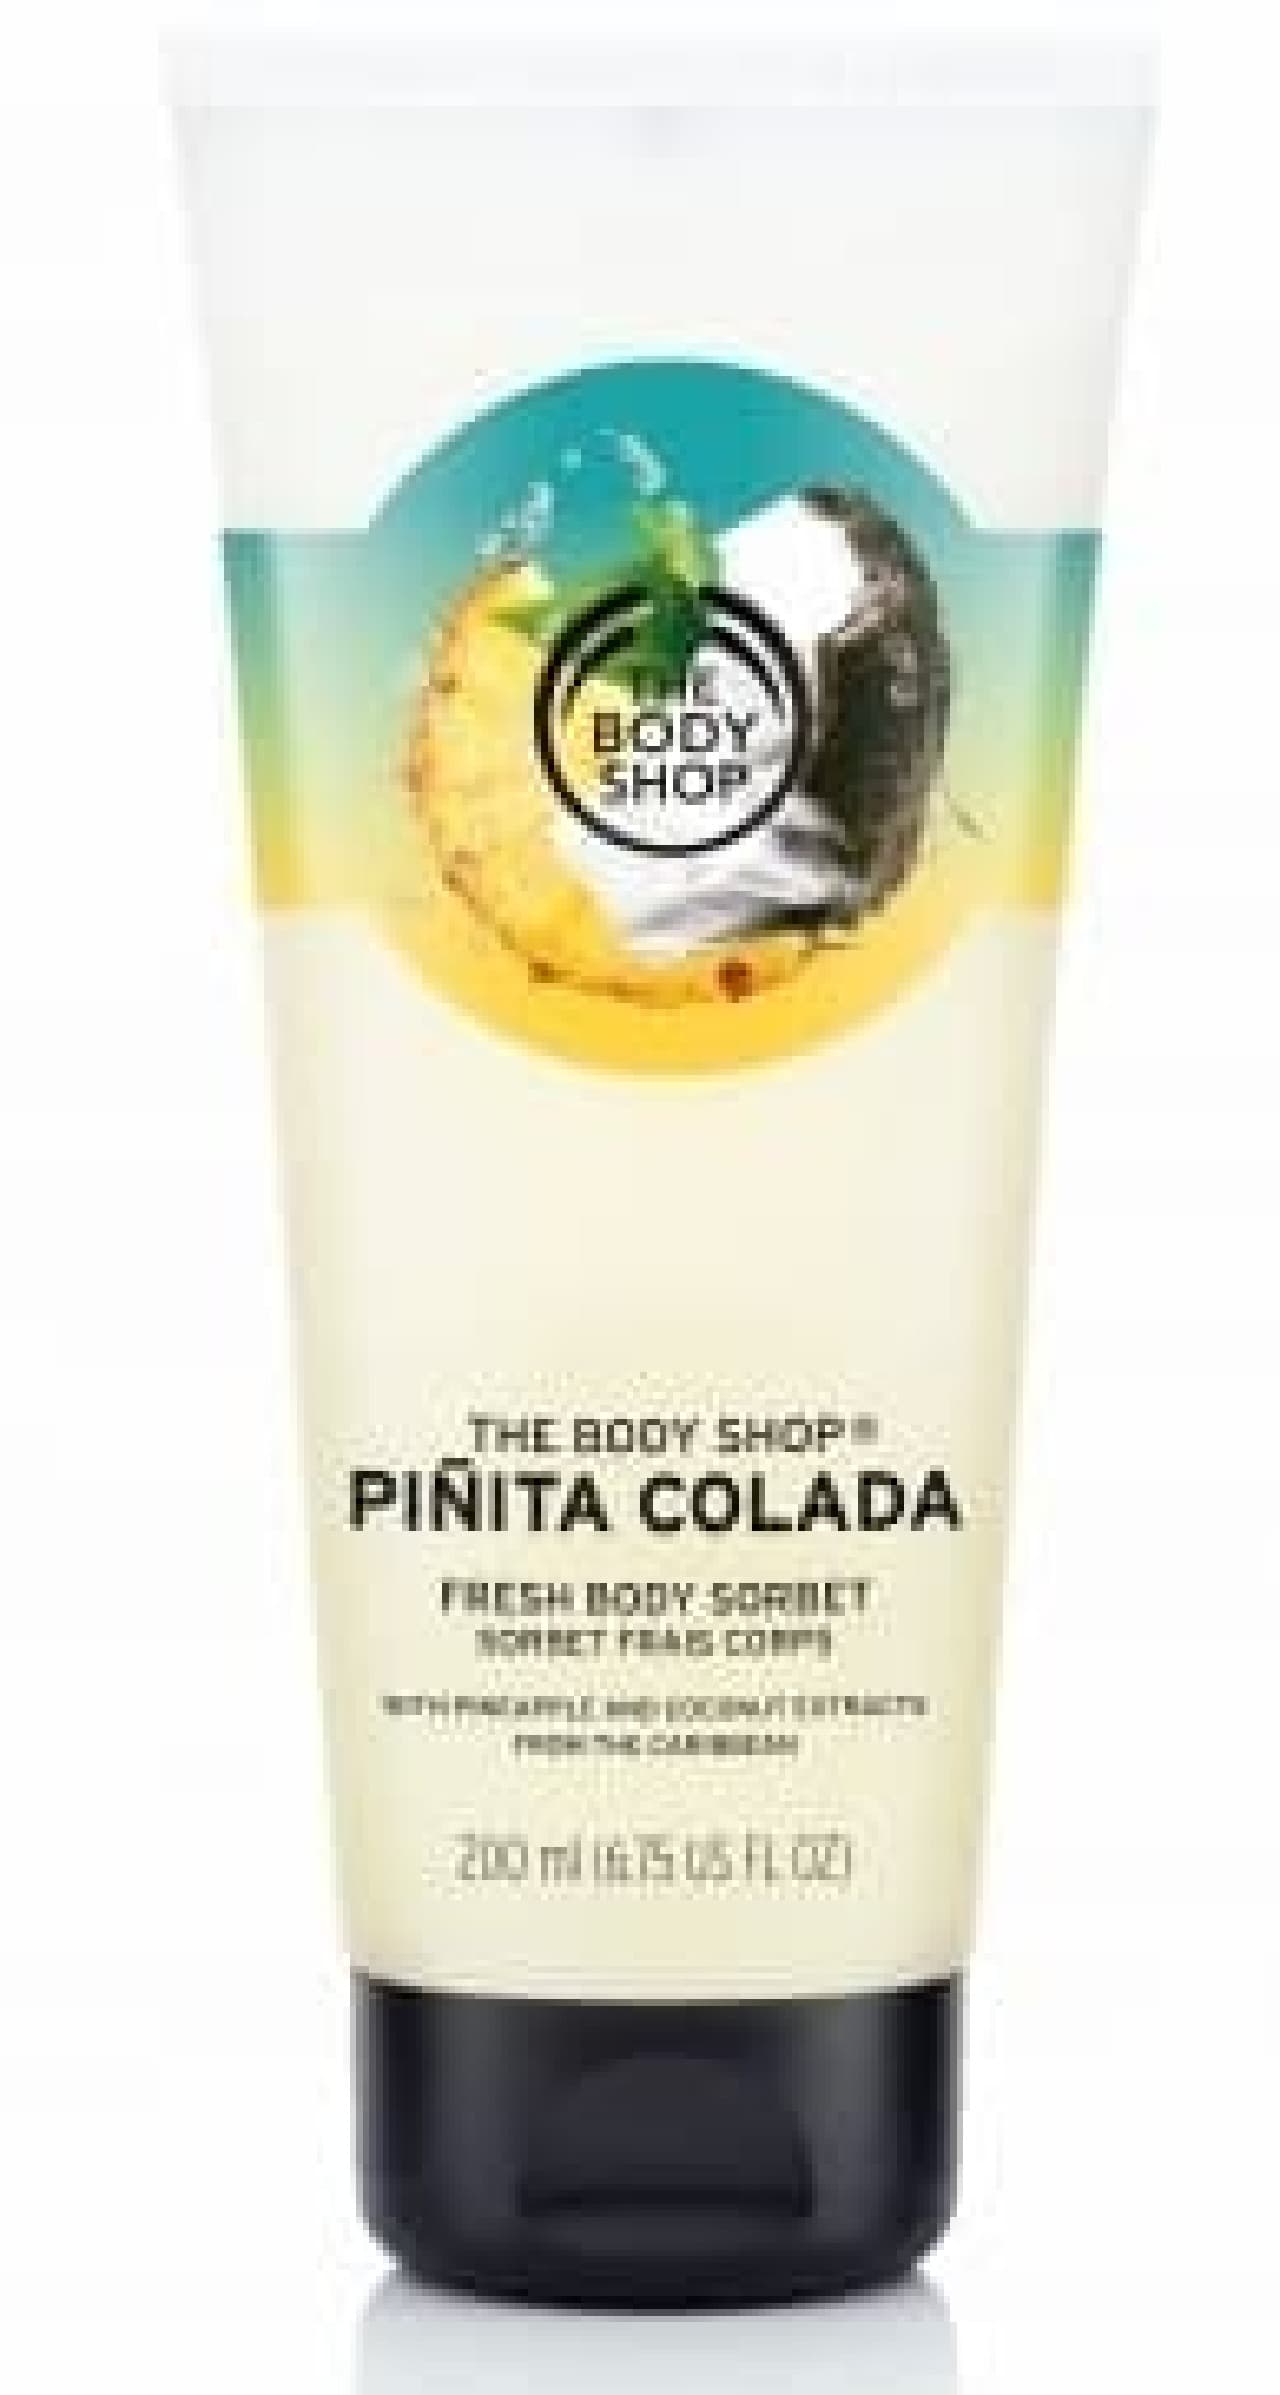 The Body Shop "Pinita Collada"